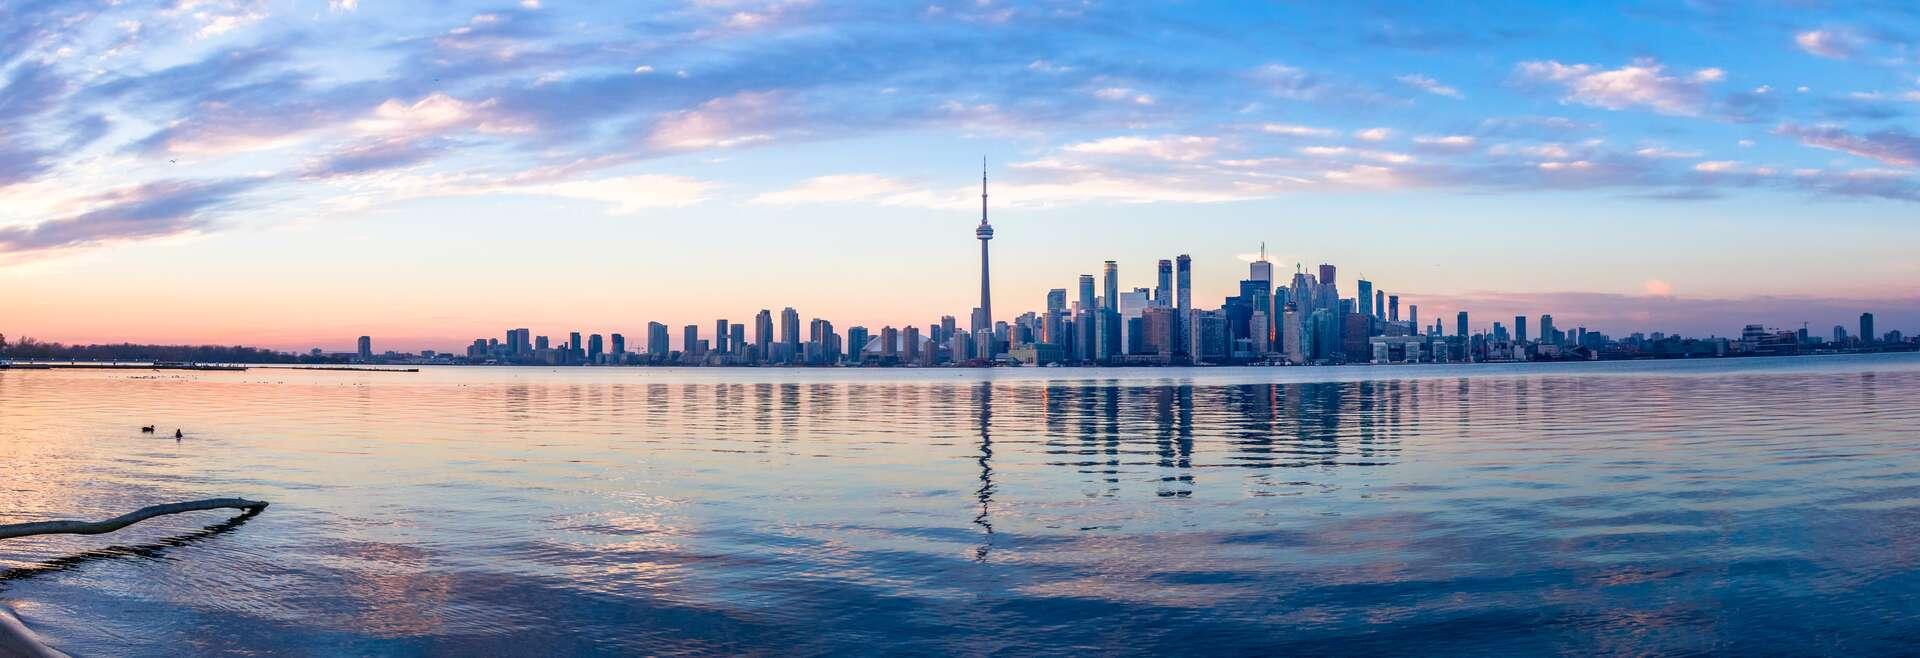 Séjour linguistique Canada, Toronto, Skyline